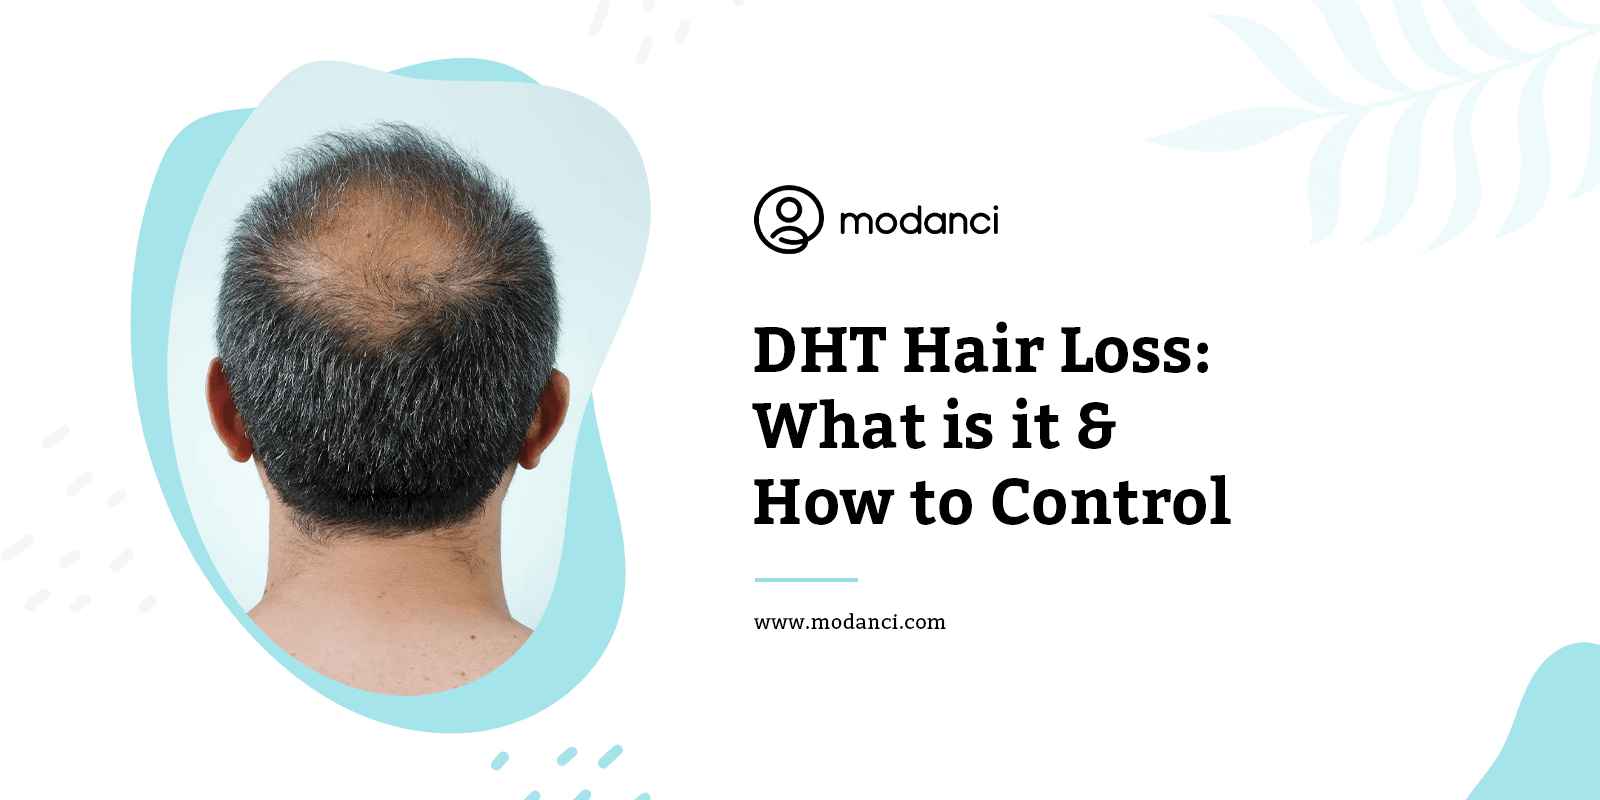 dht hair loss